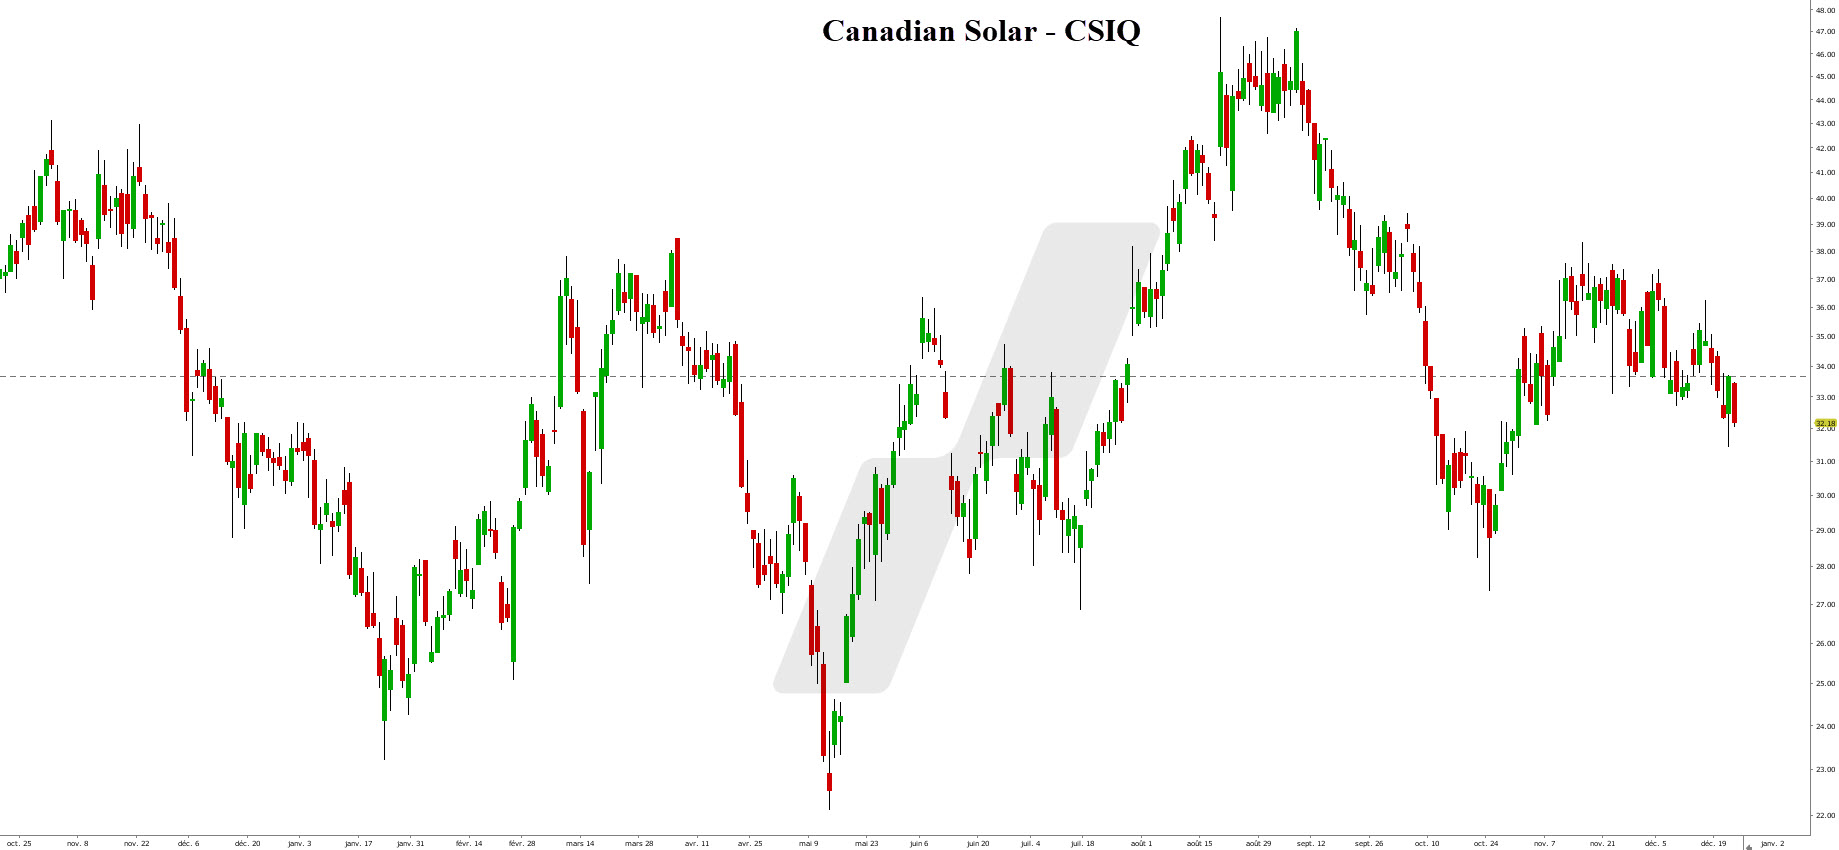 investir dans l'énergie solaire - action énergie solaire - graphique Canadian Solar